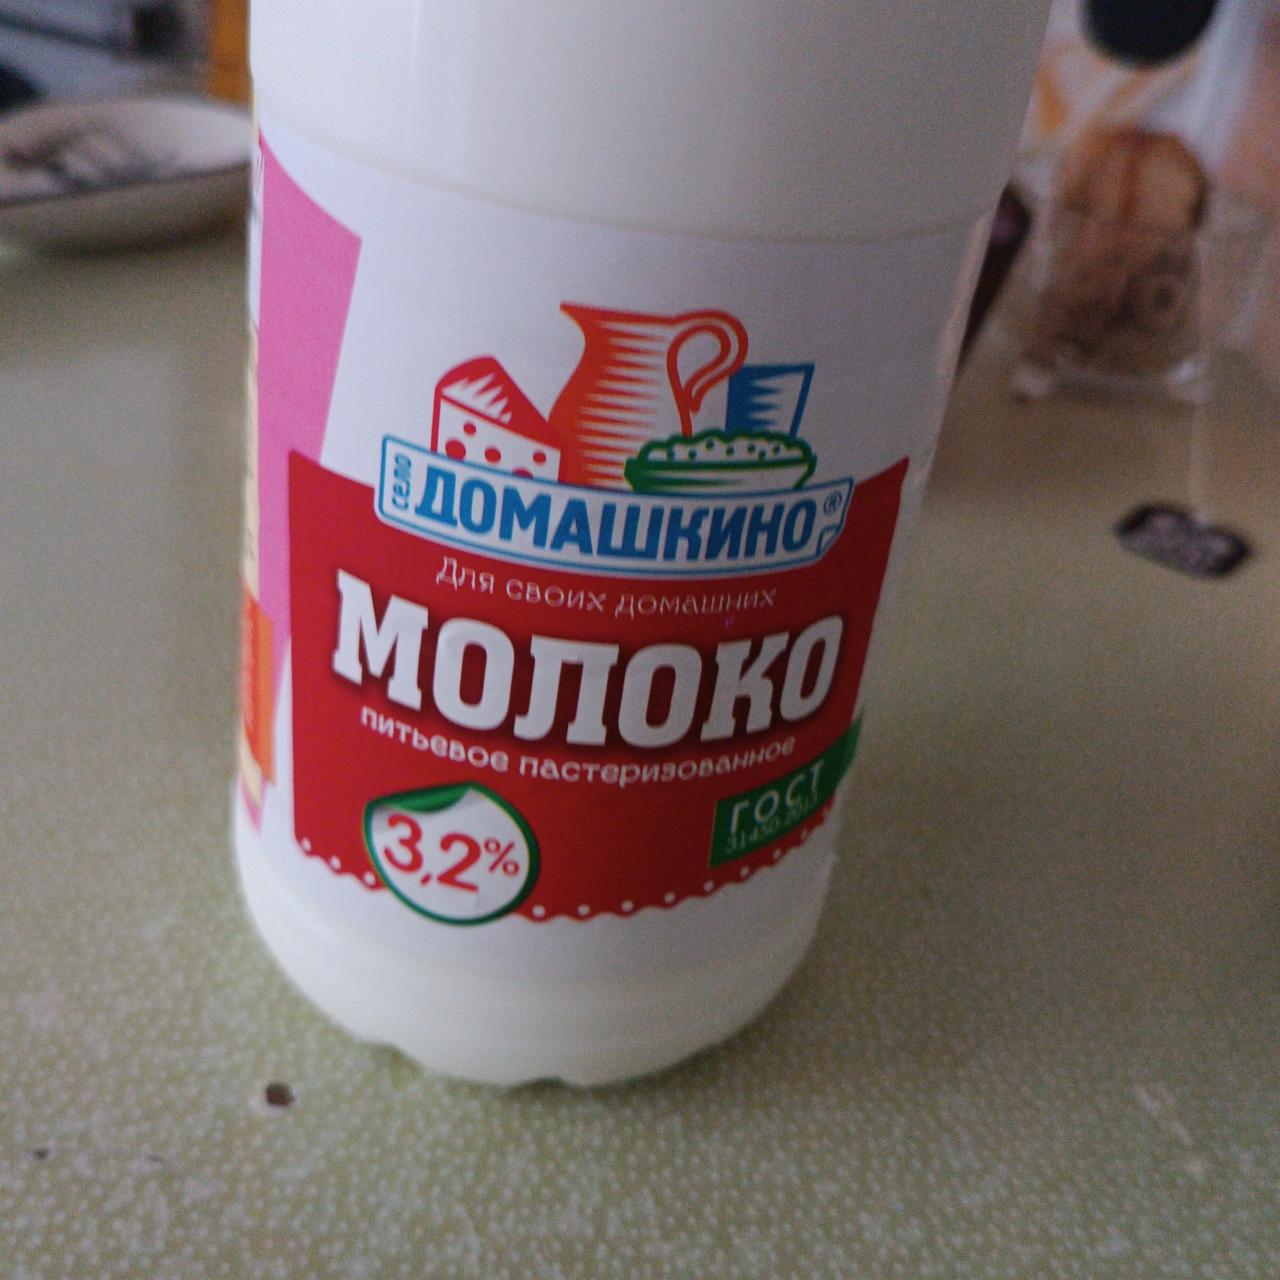 Фото - Молоко 3.2% Село Домашкино